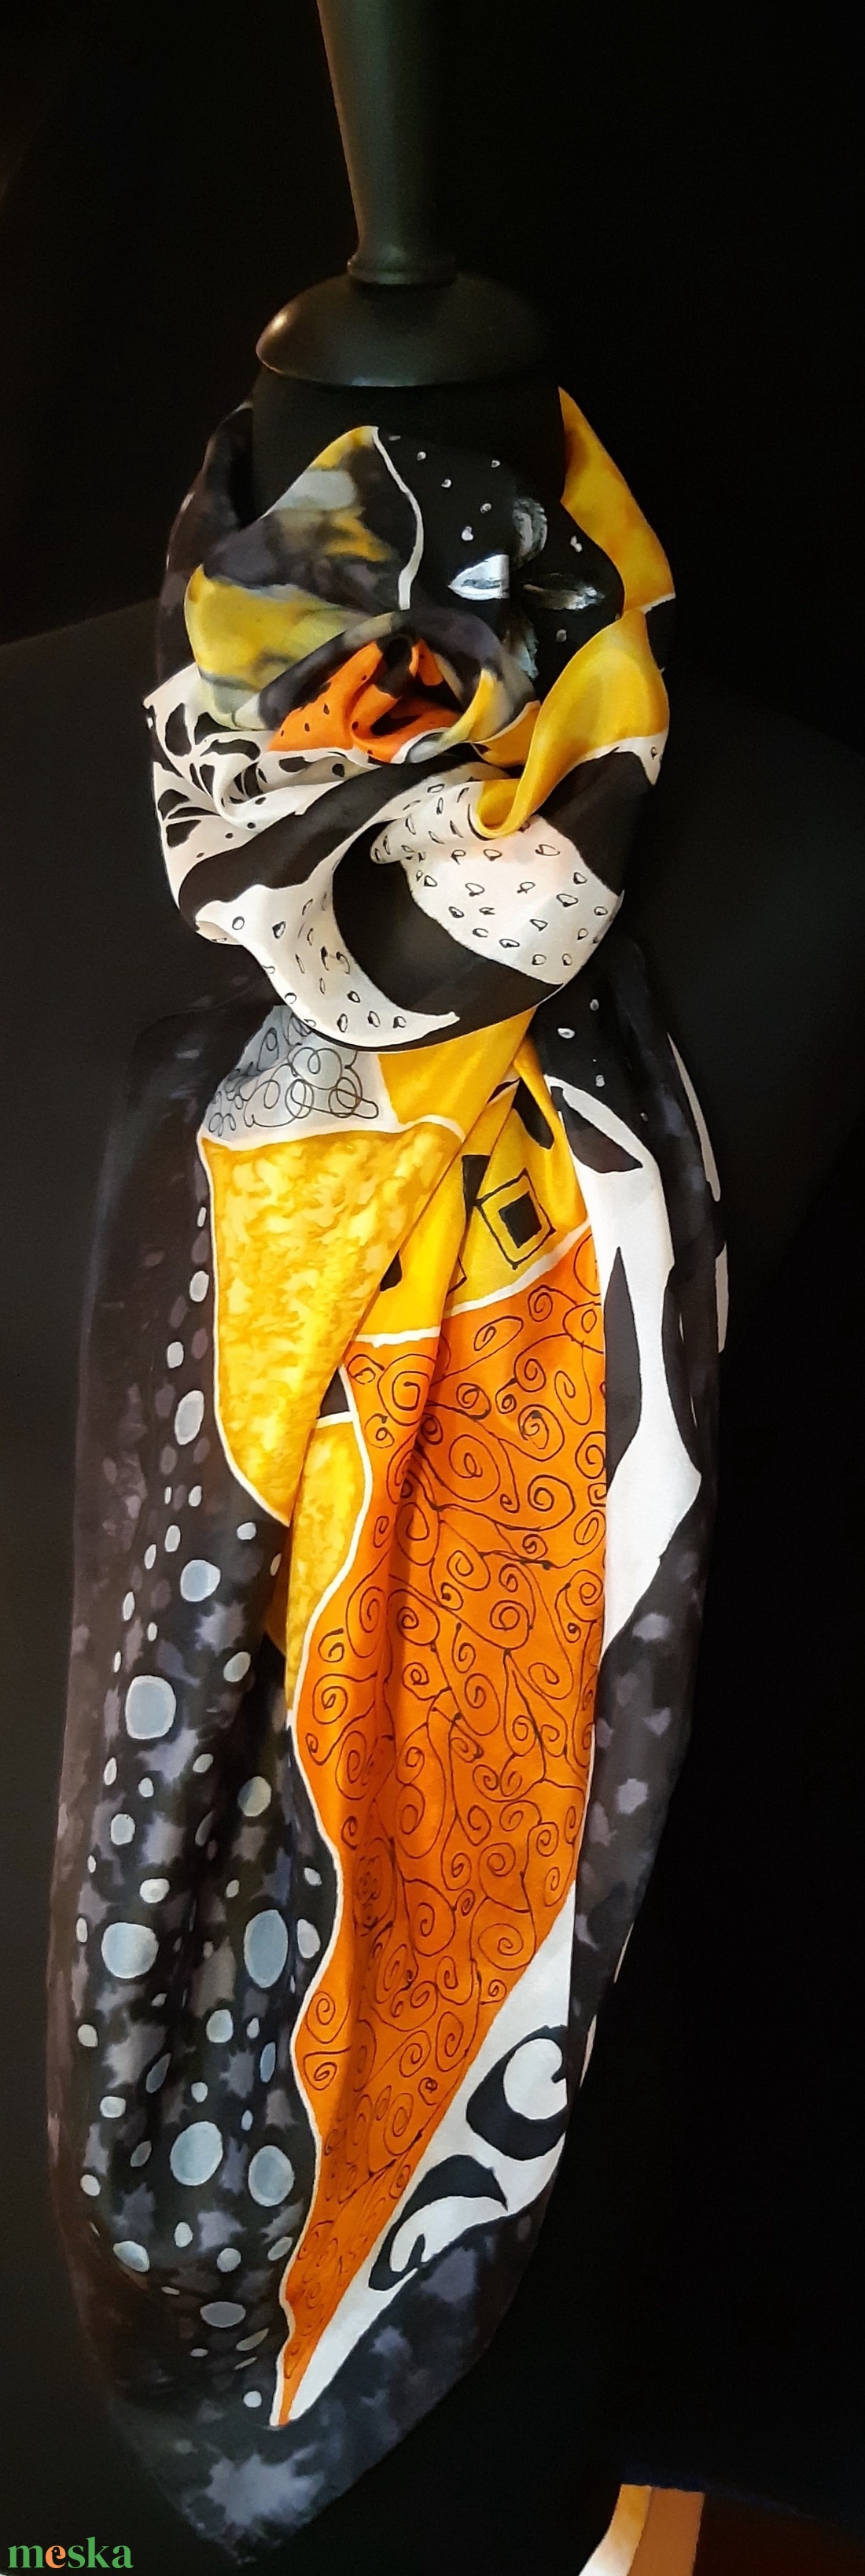 Sárga-fehér-fekete absztrak mintás selyemkendő - ruha & divat - sál, sapka, kendő - kendő - Meska.hu